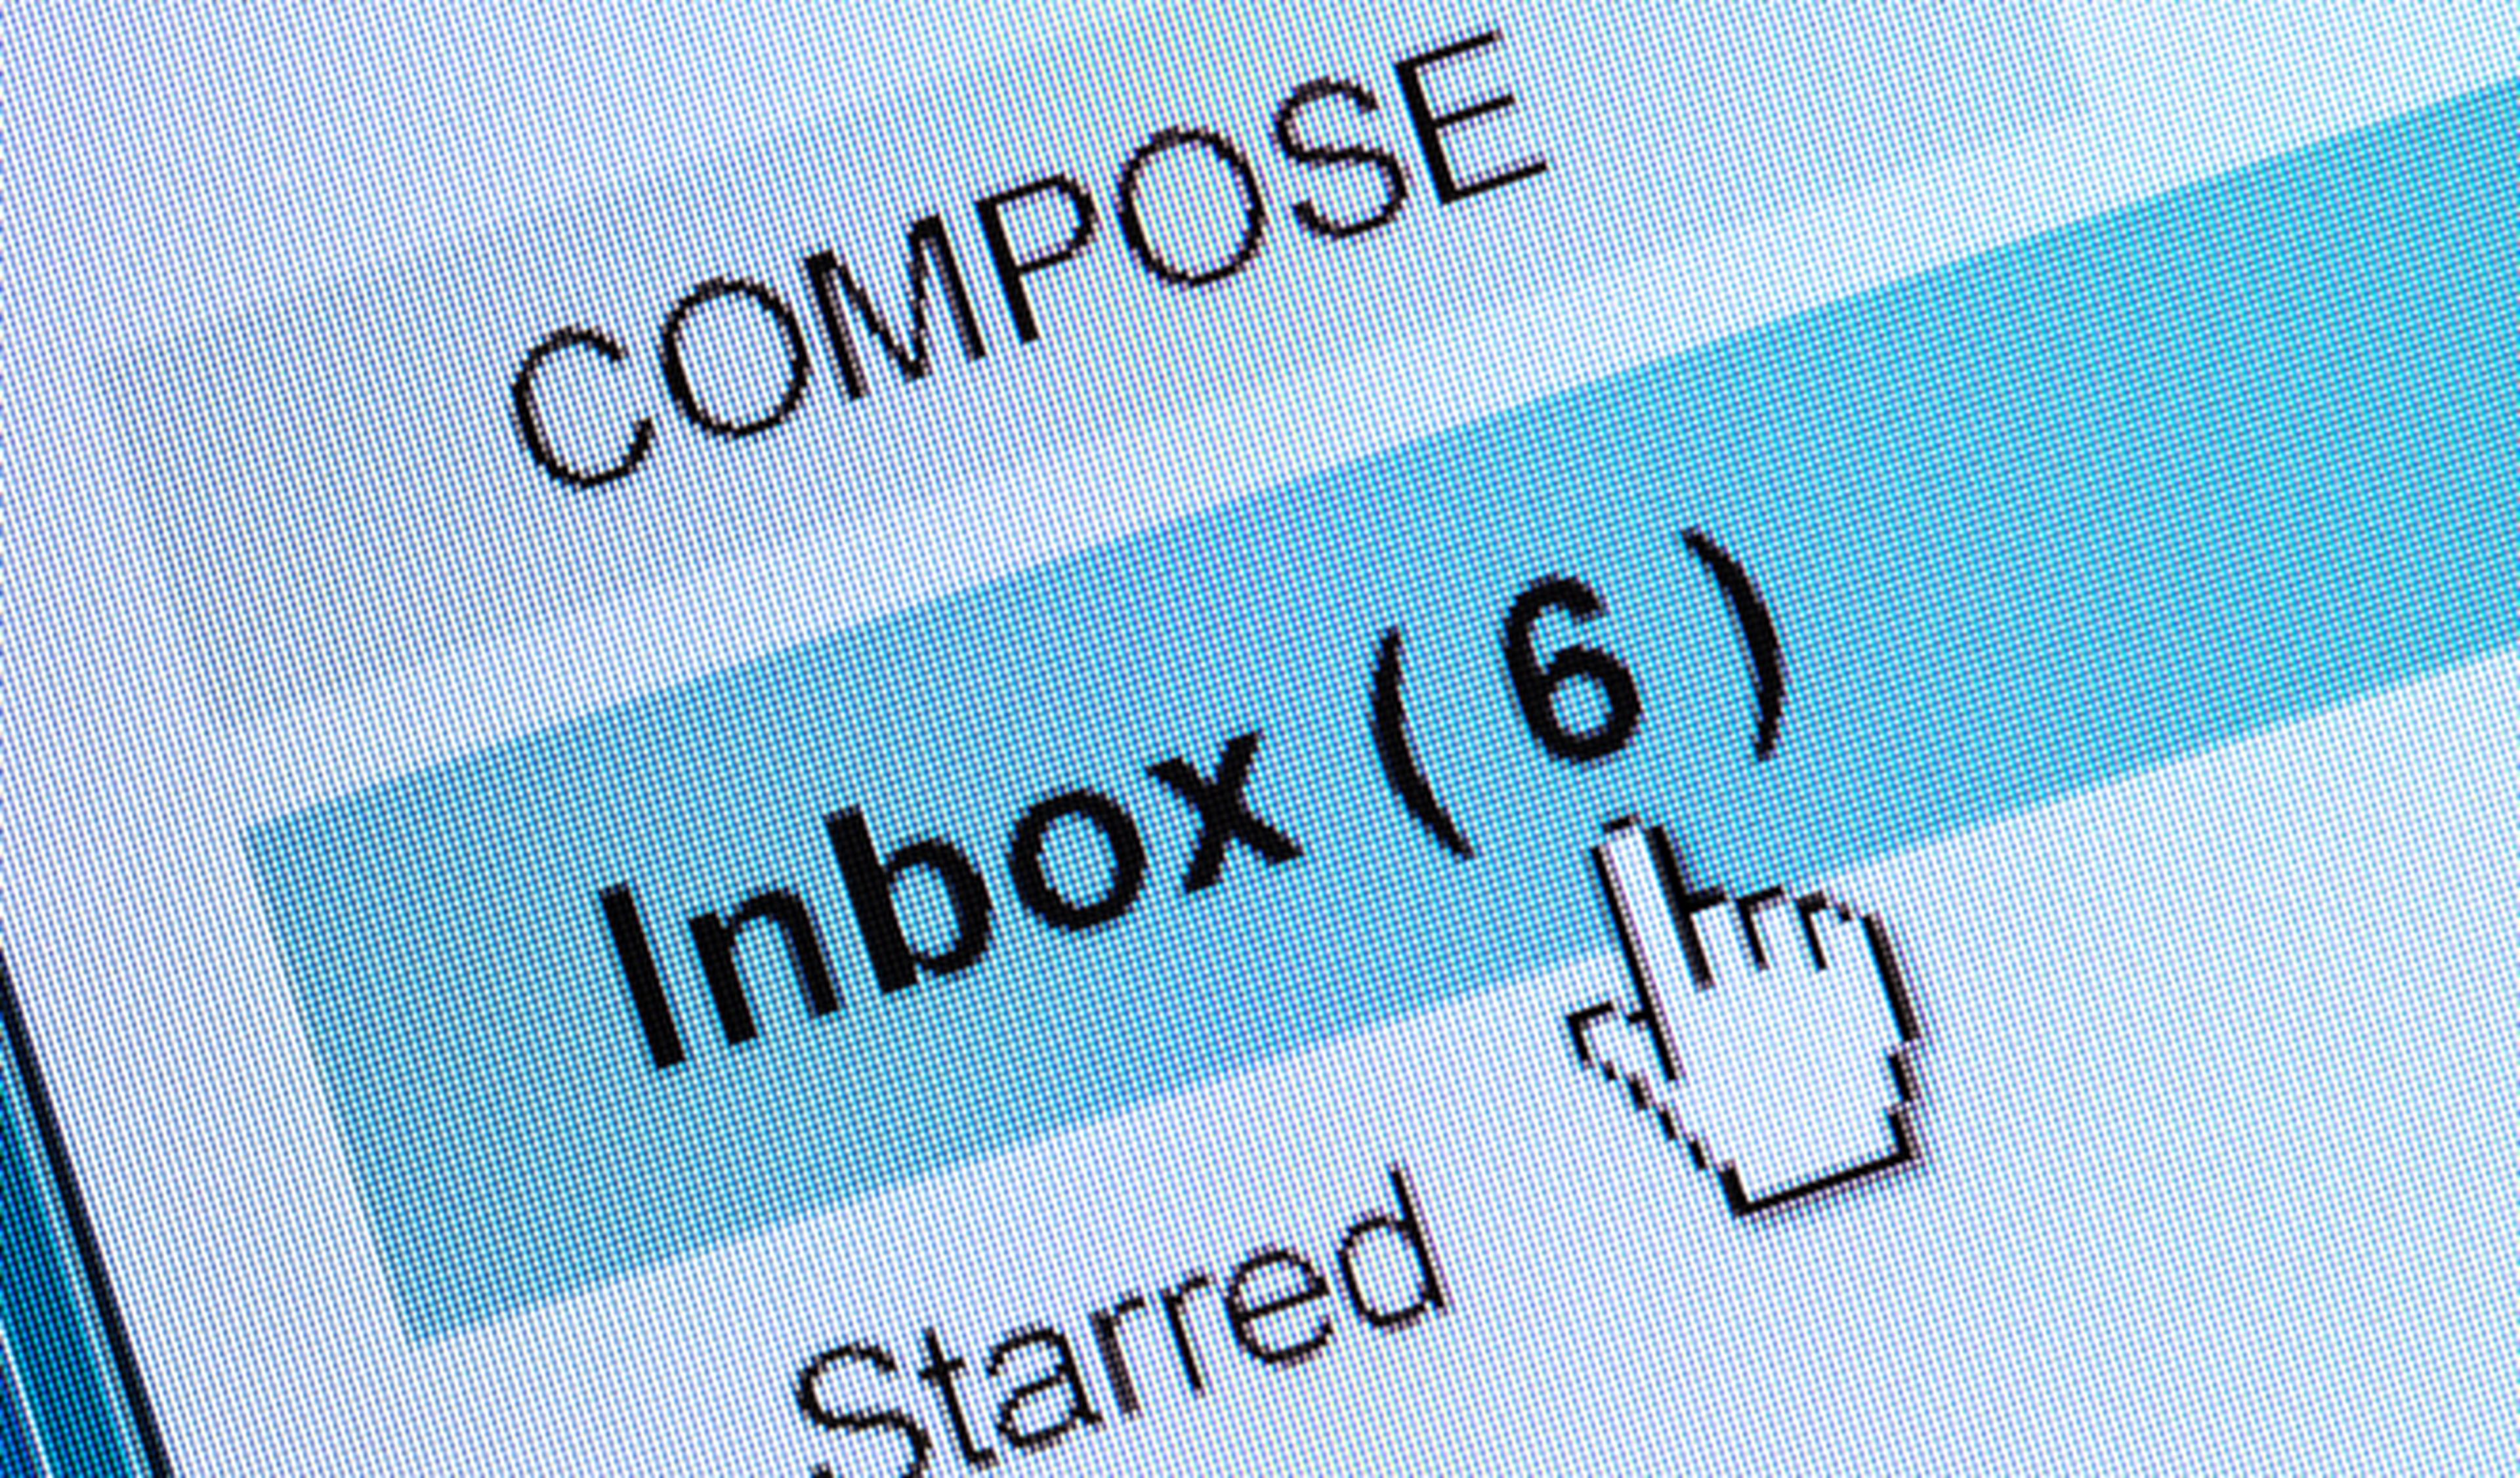 Cómo mandar un email anónimo